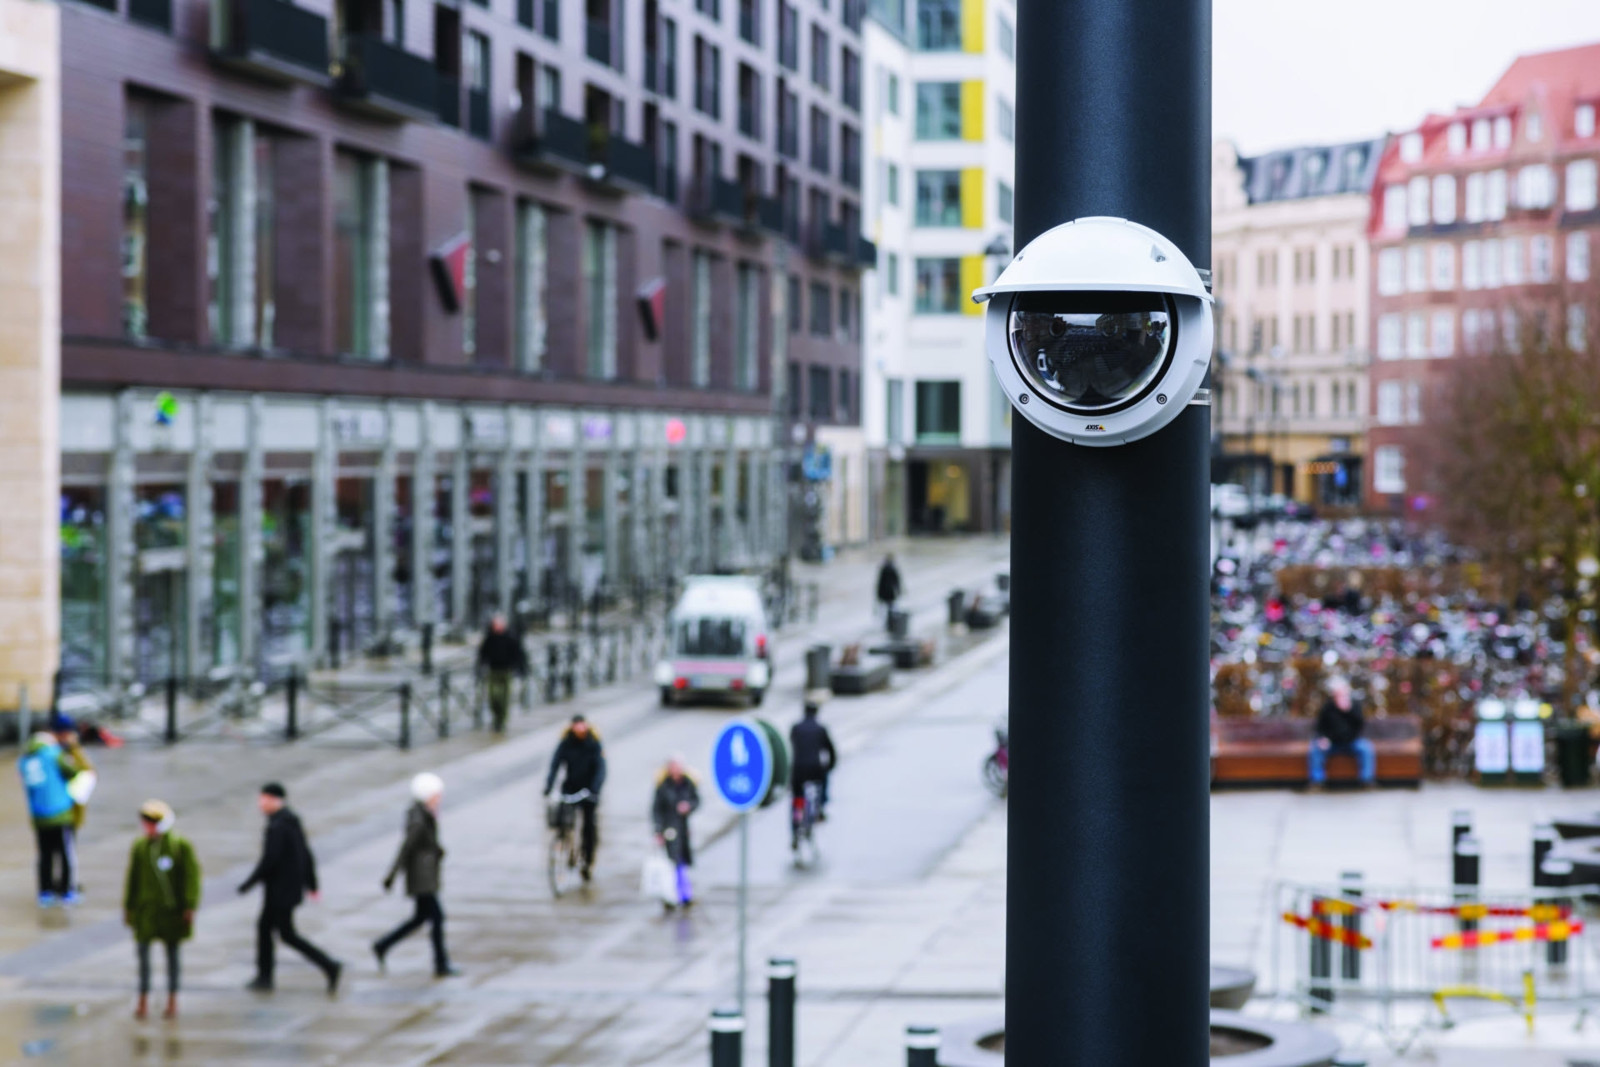 Um Gewalt in Städten frühzeitig zu erkennen, hat Oddity.ai einen KI-Algorithmus entwickelt, der Gewaltverbrechen im Livestream von in Städten installierten Kameras erkennt. 